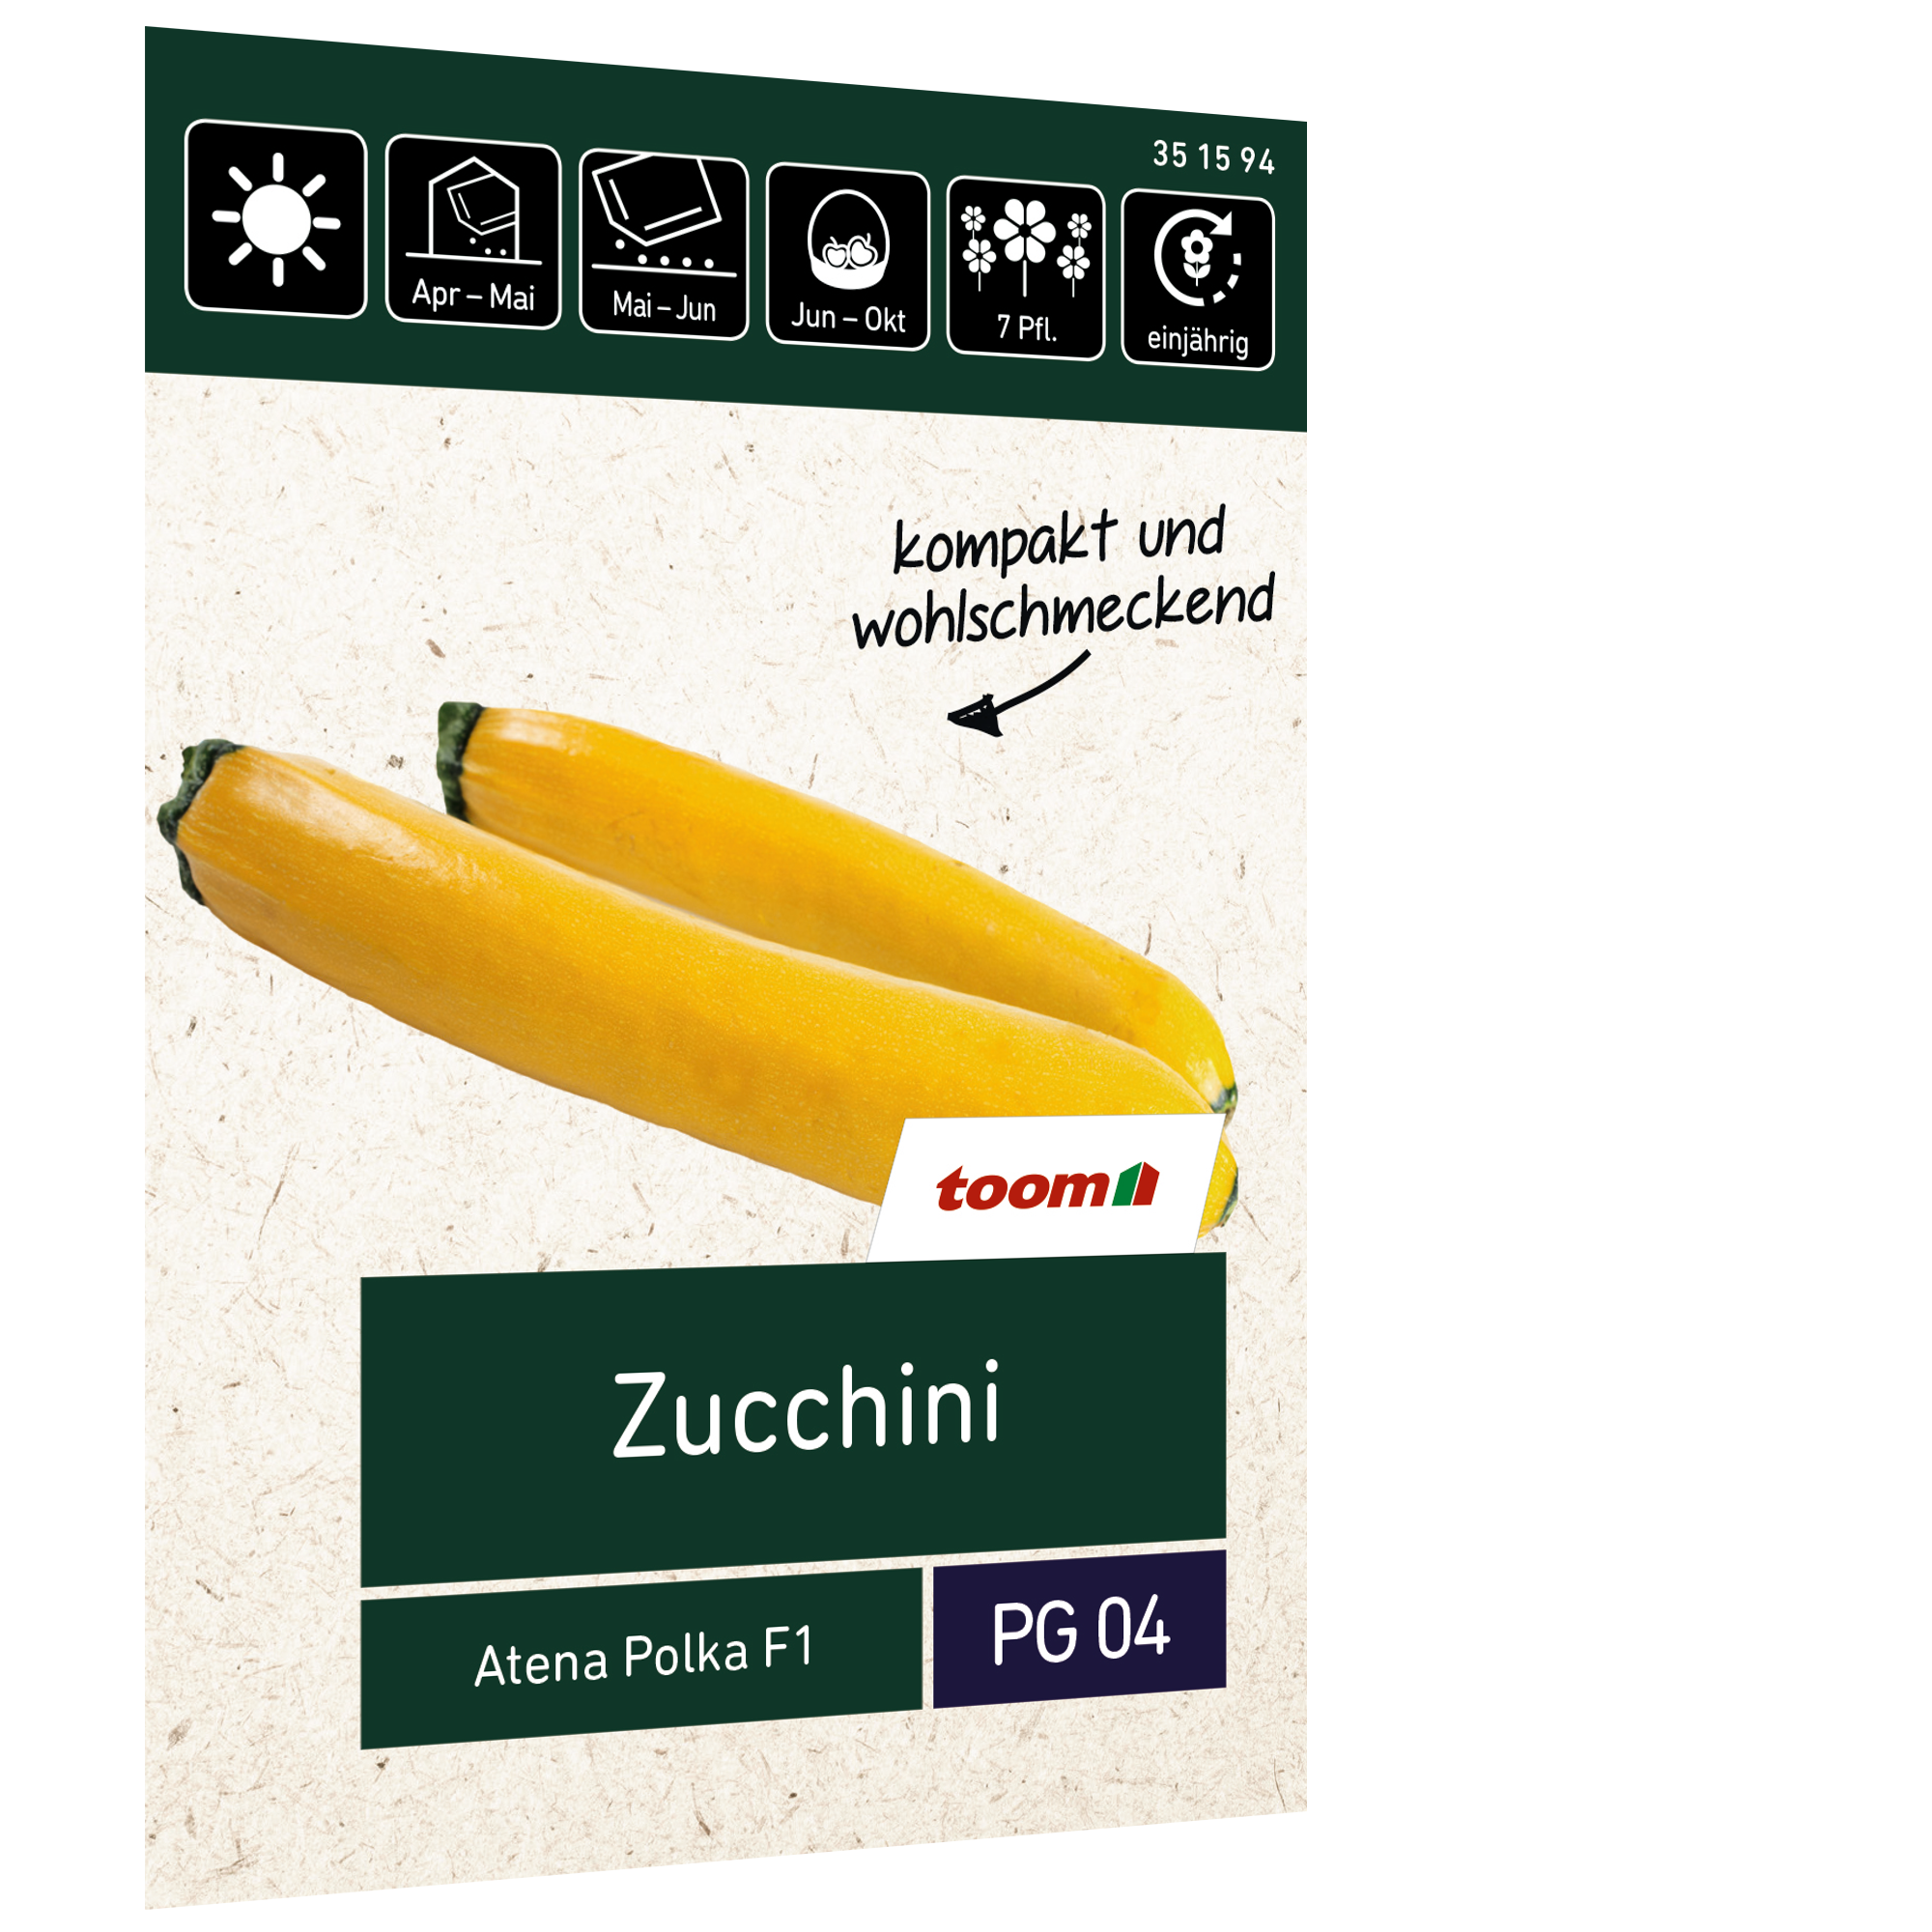 Zucchini 'Atena Polka F1' + product picture